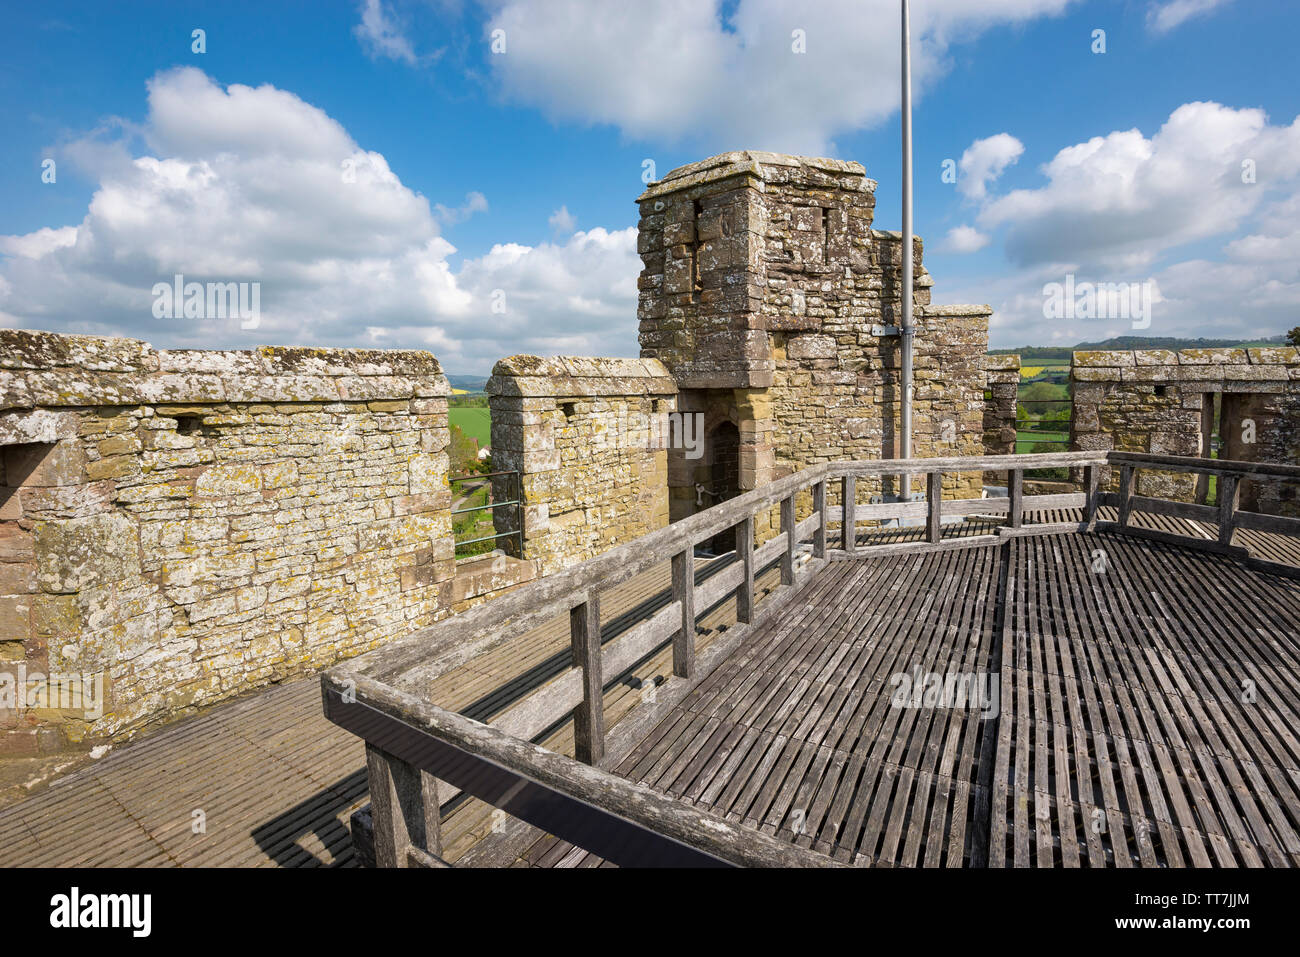 Passerelle sur la tour sud du château Stokesay, Craven Arms, Shropshire, Angleterre. Banque D'Images